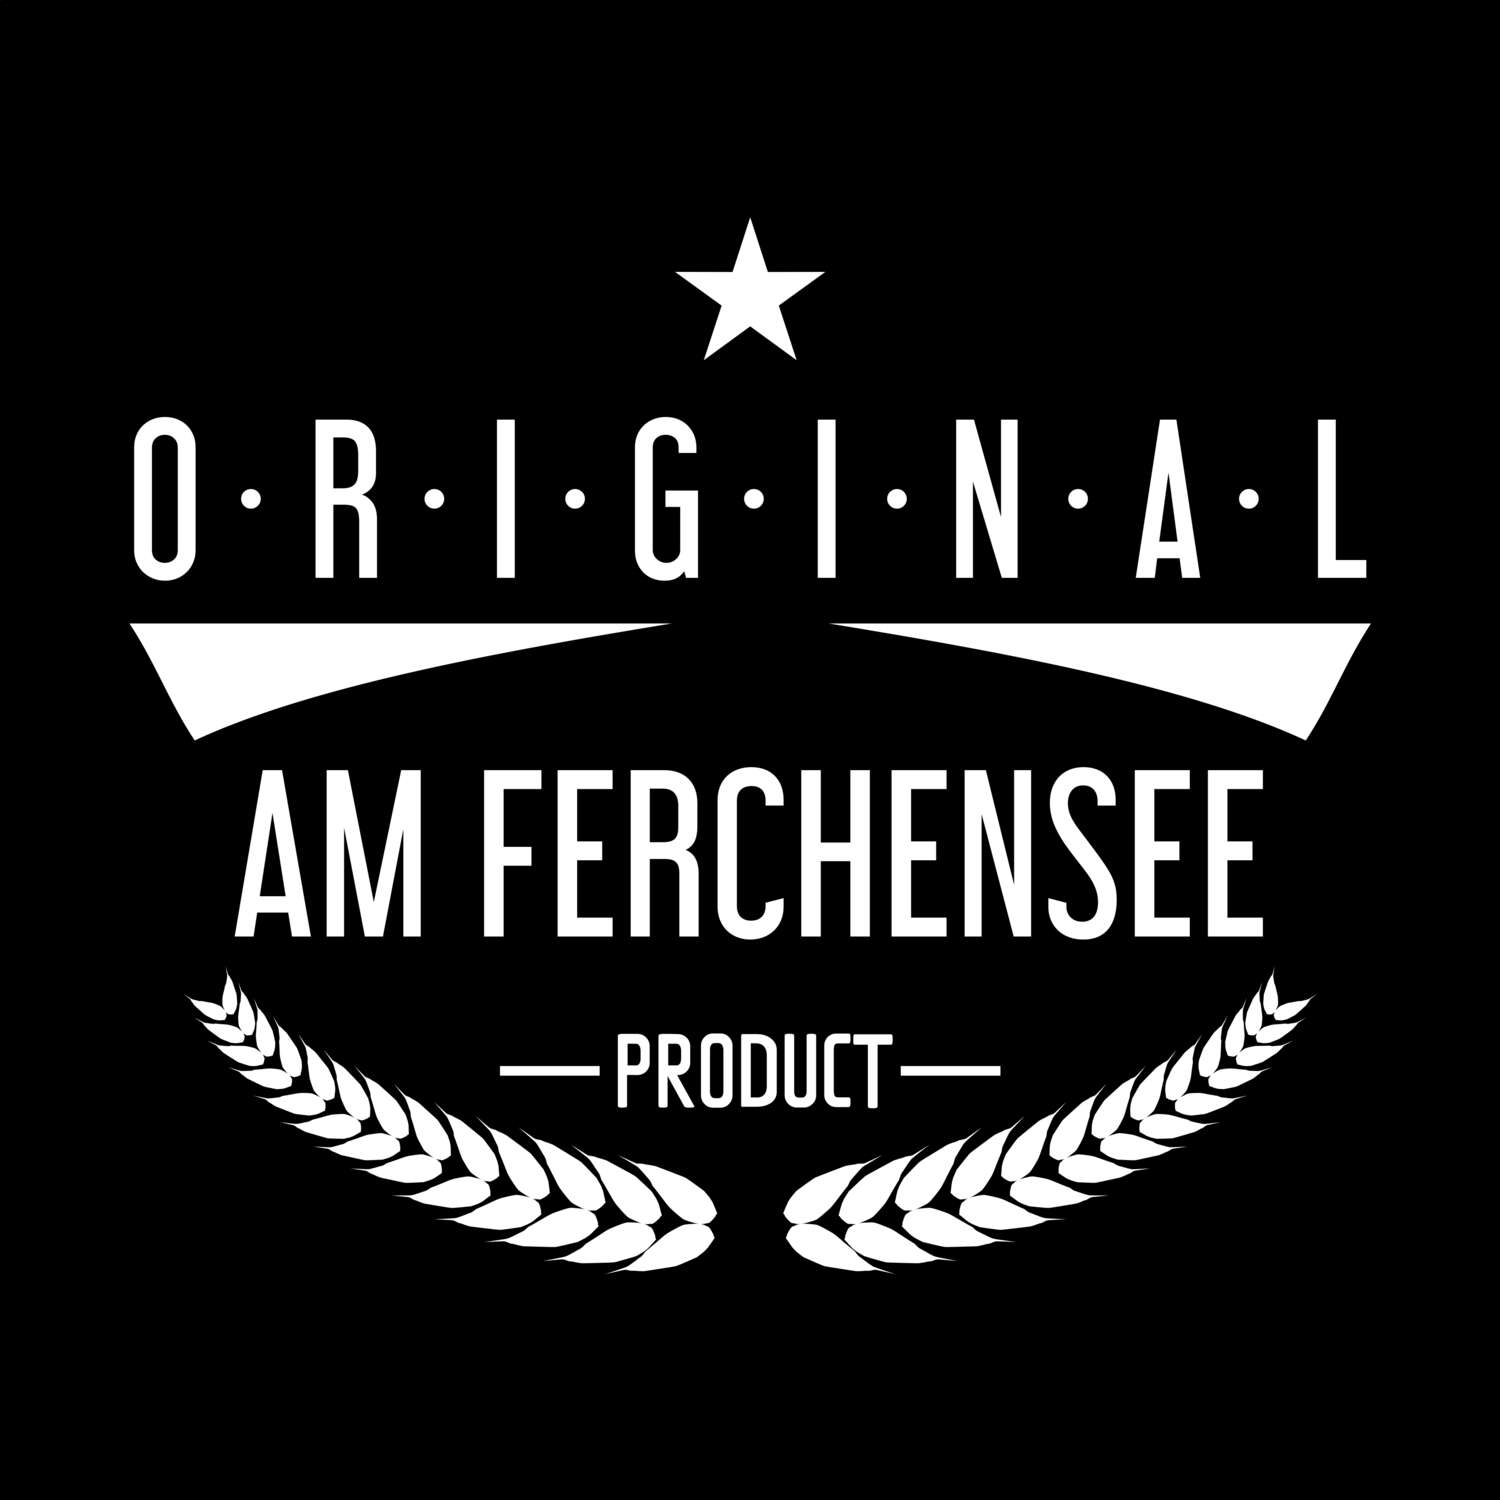 Am Ferchensee T-Shirt »Original Product«